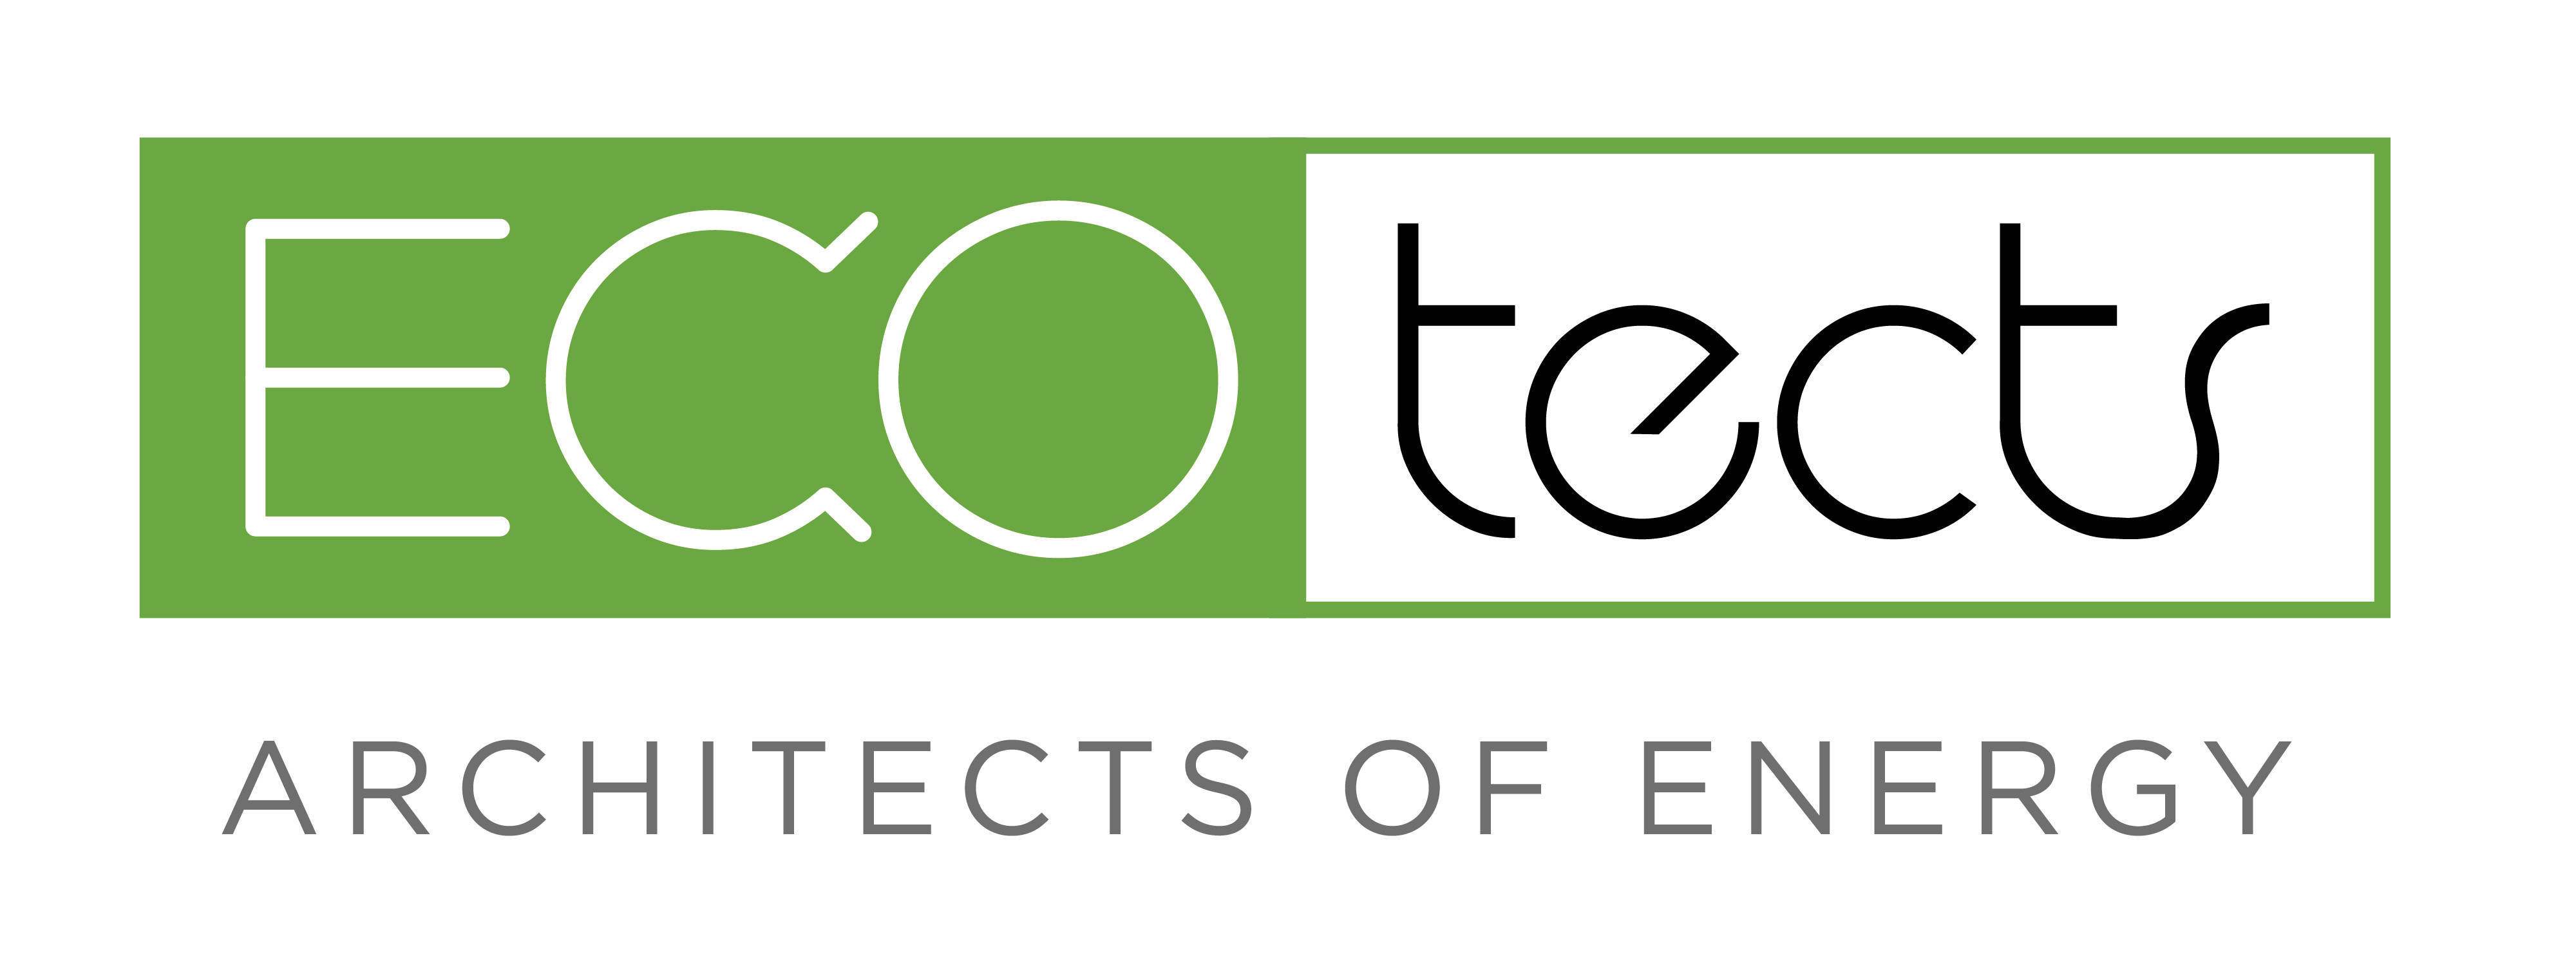 ECOTECTS logo